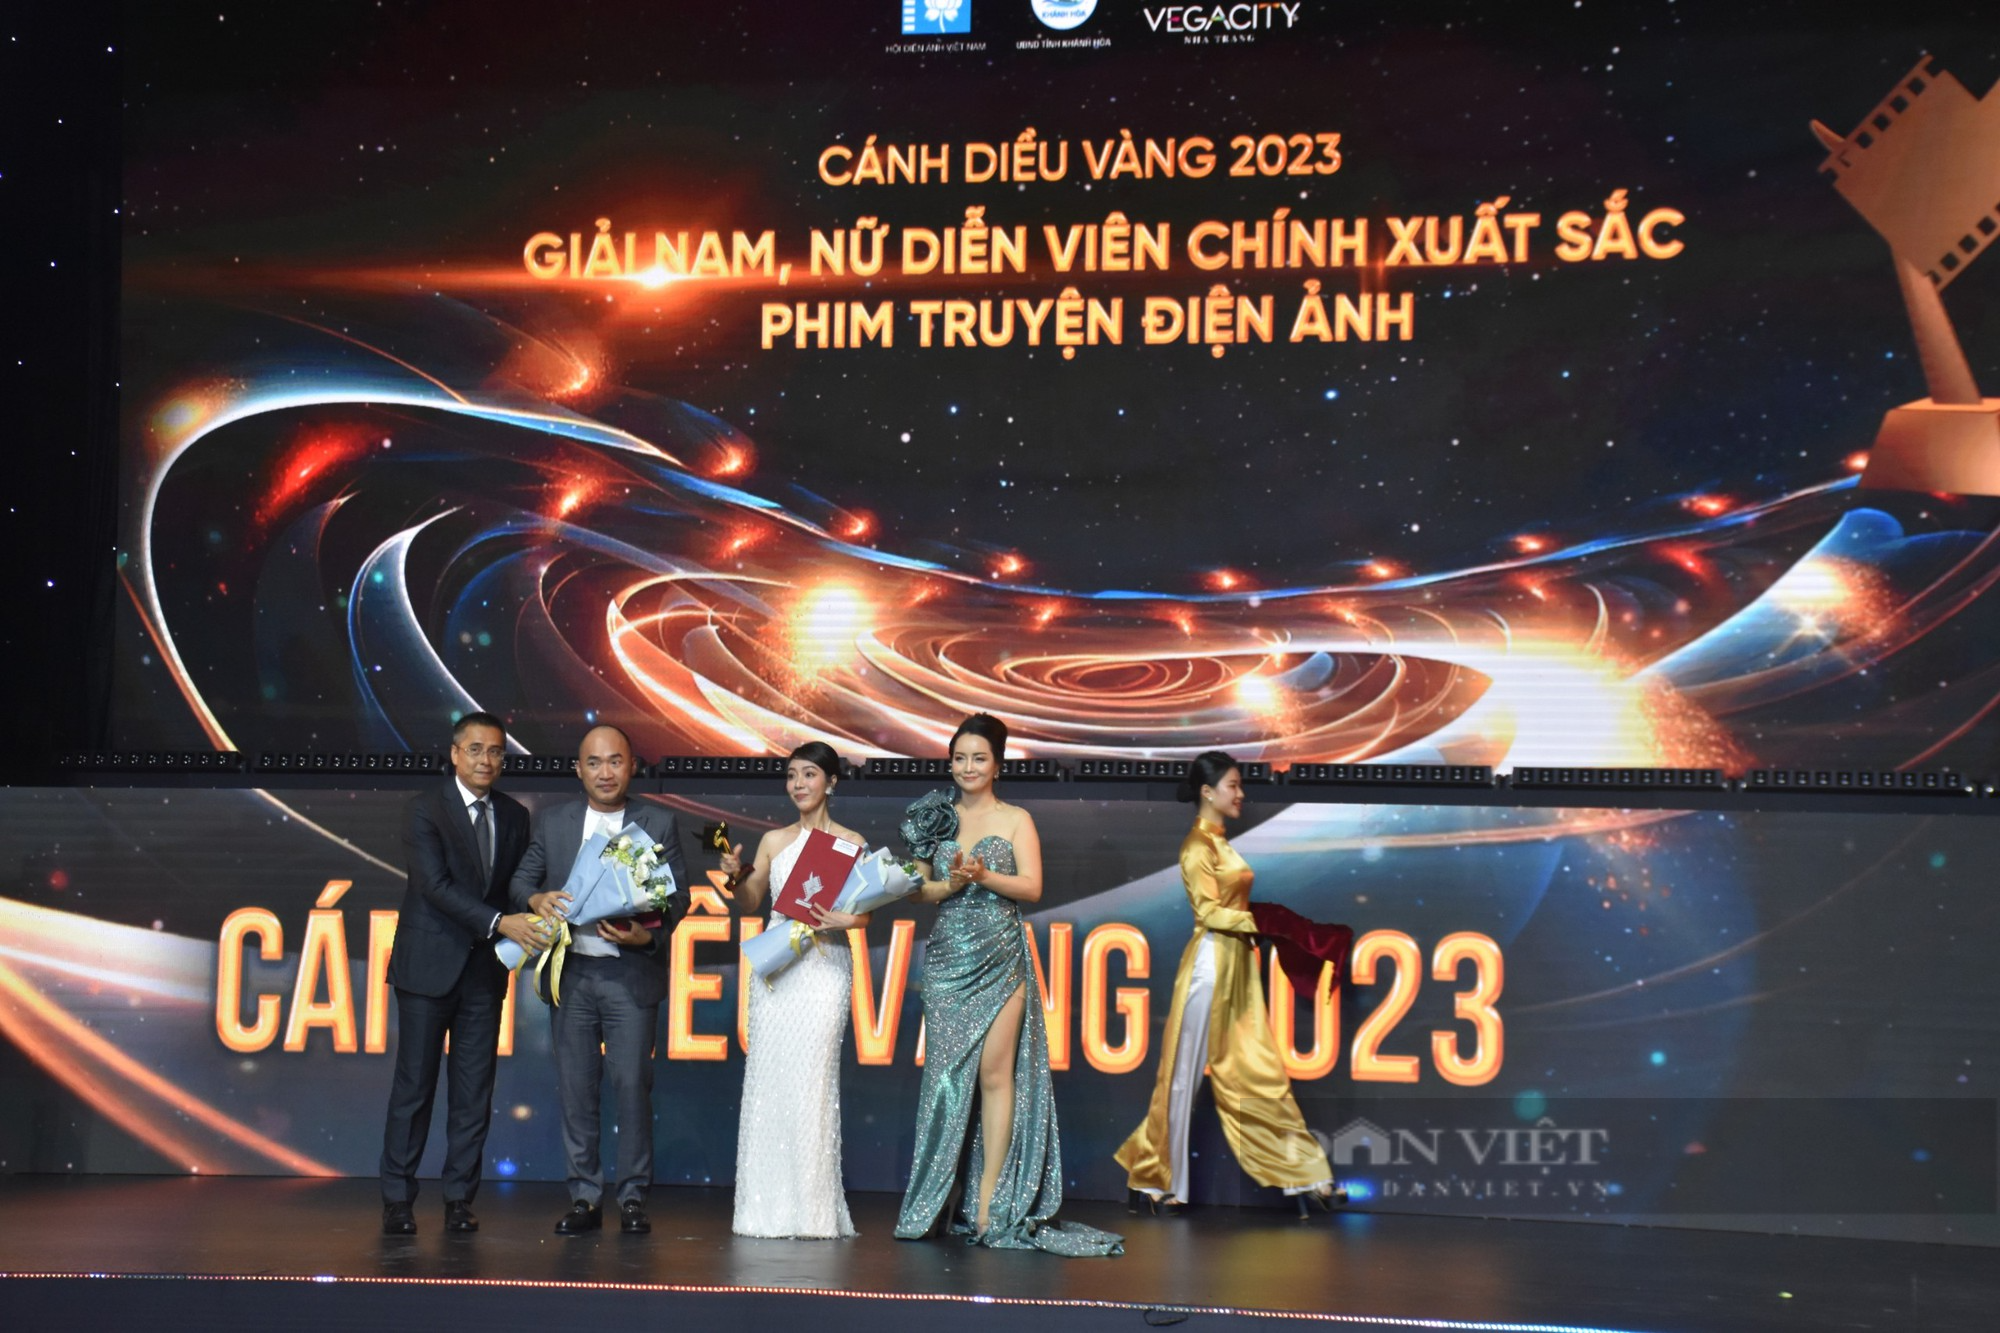 Bộ phim Tro Tàn Rực Rỡ, Mẹ Rơm đạt giải cao tại lễ vinh danh Cánh diều vàng 2023 - Ảnh 6.